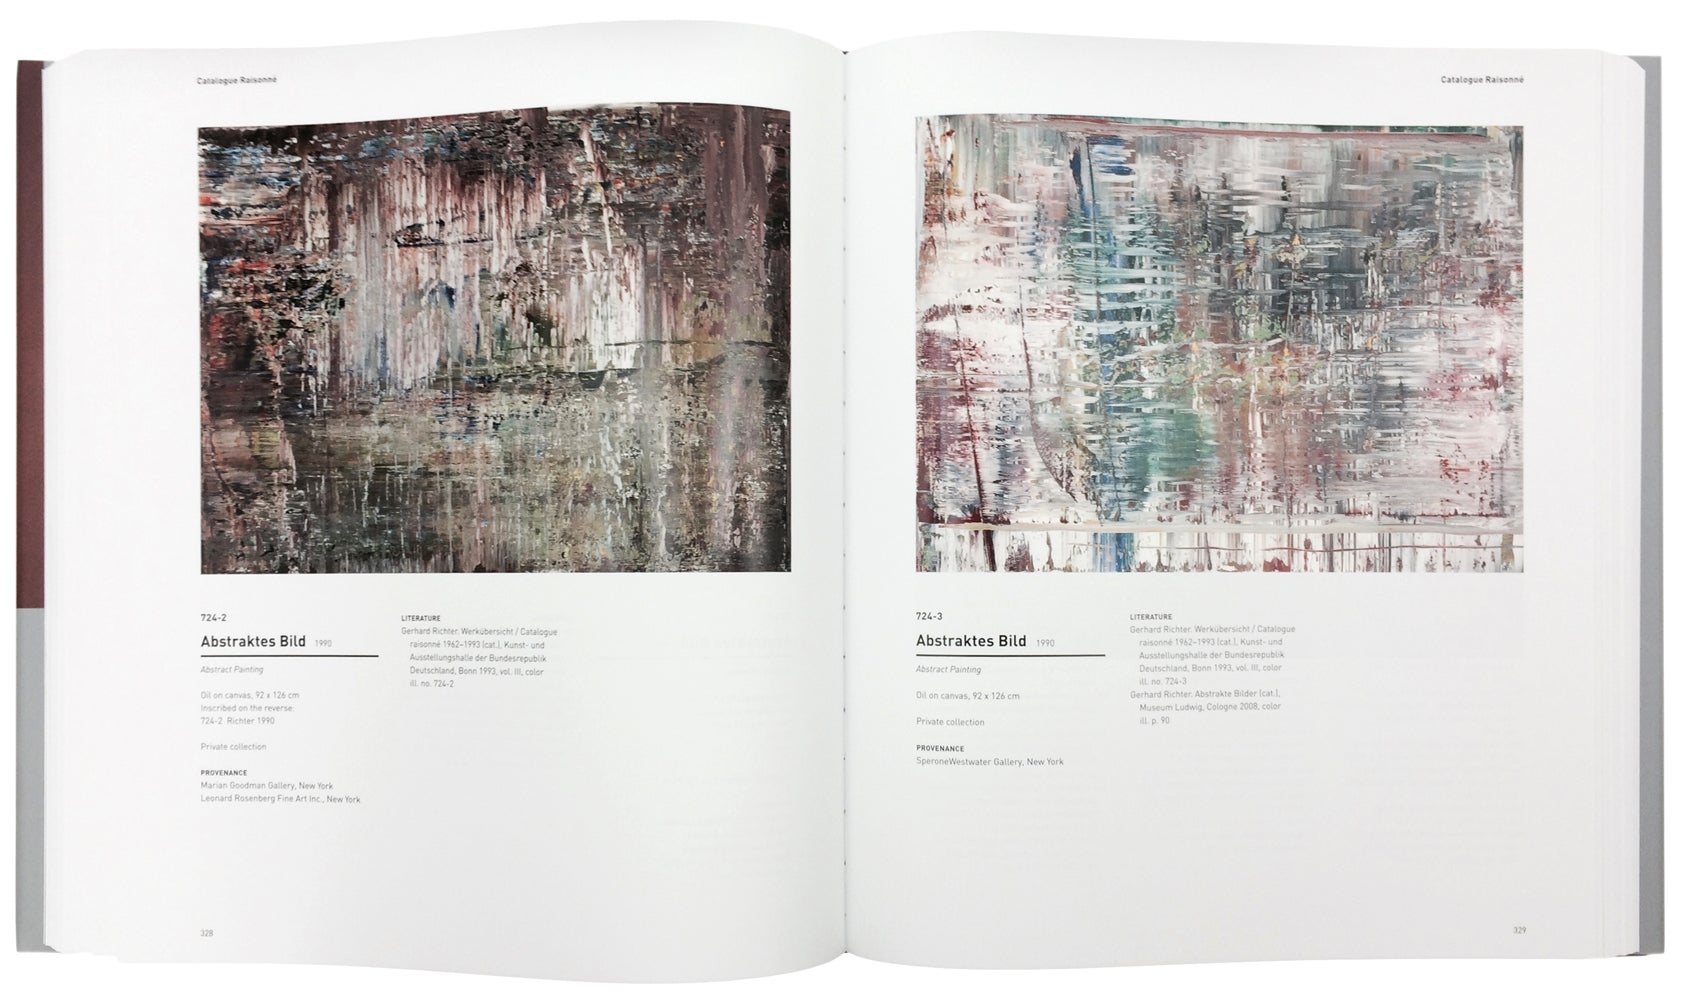 GERHARD RICHTER: Catalogue Raisonné, Volume 4 by Dietmar Elger on Ursus  Books, Ltd